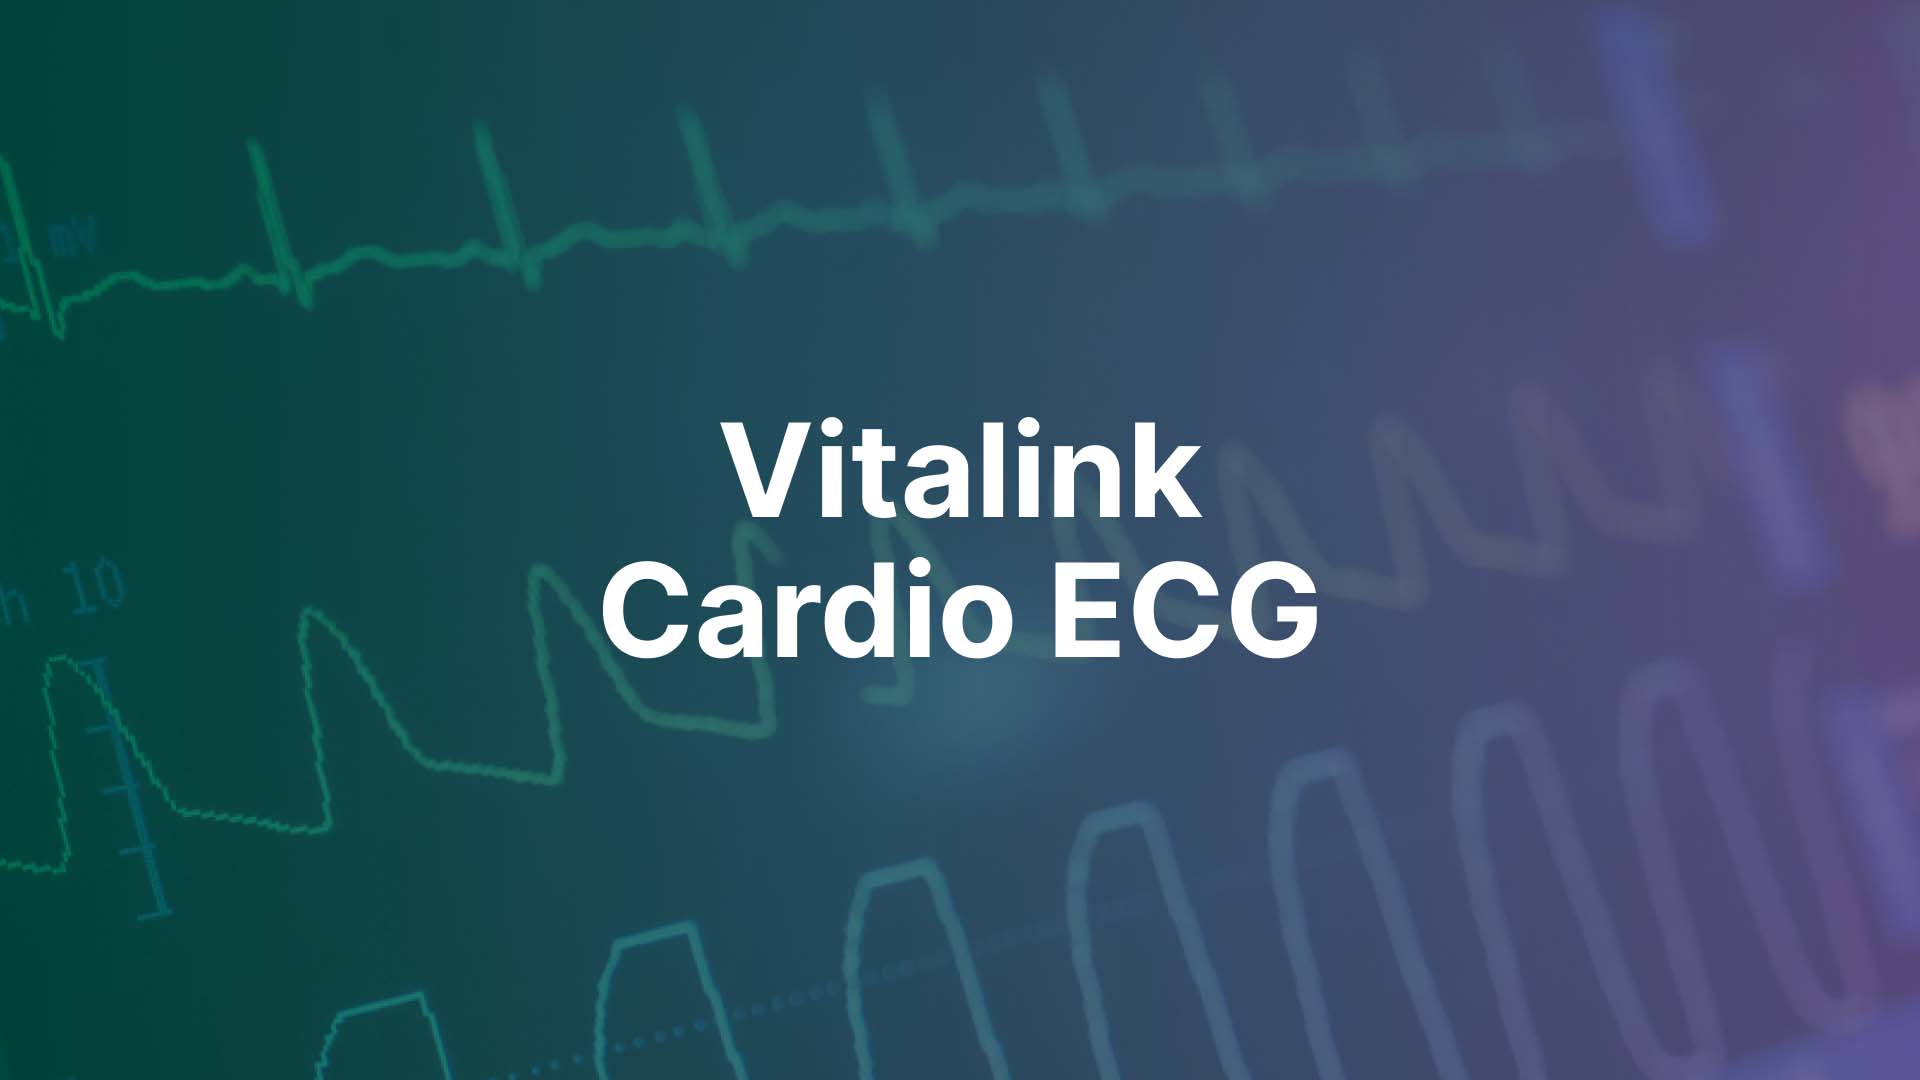 Vitalink Cardio ECG